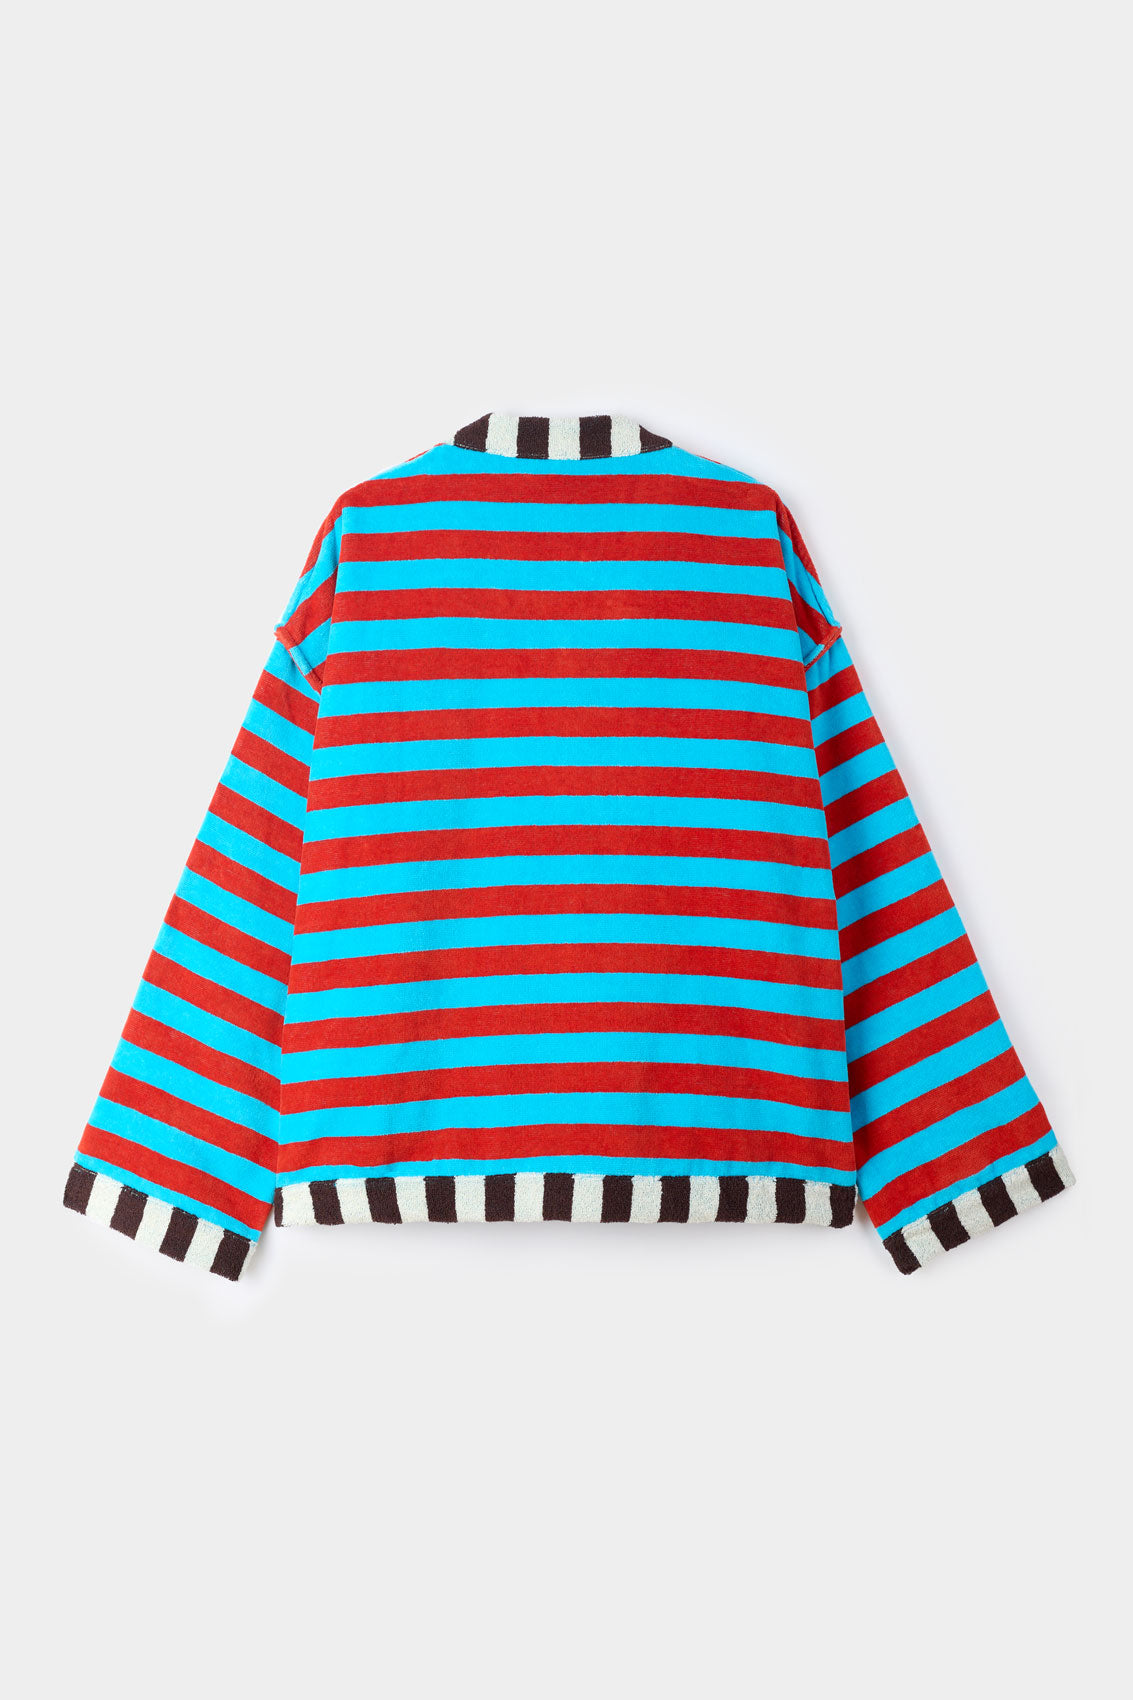 BEACH SWEATSHIRT / azure & red stripes